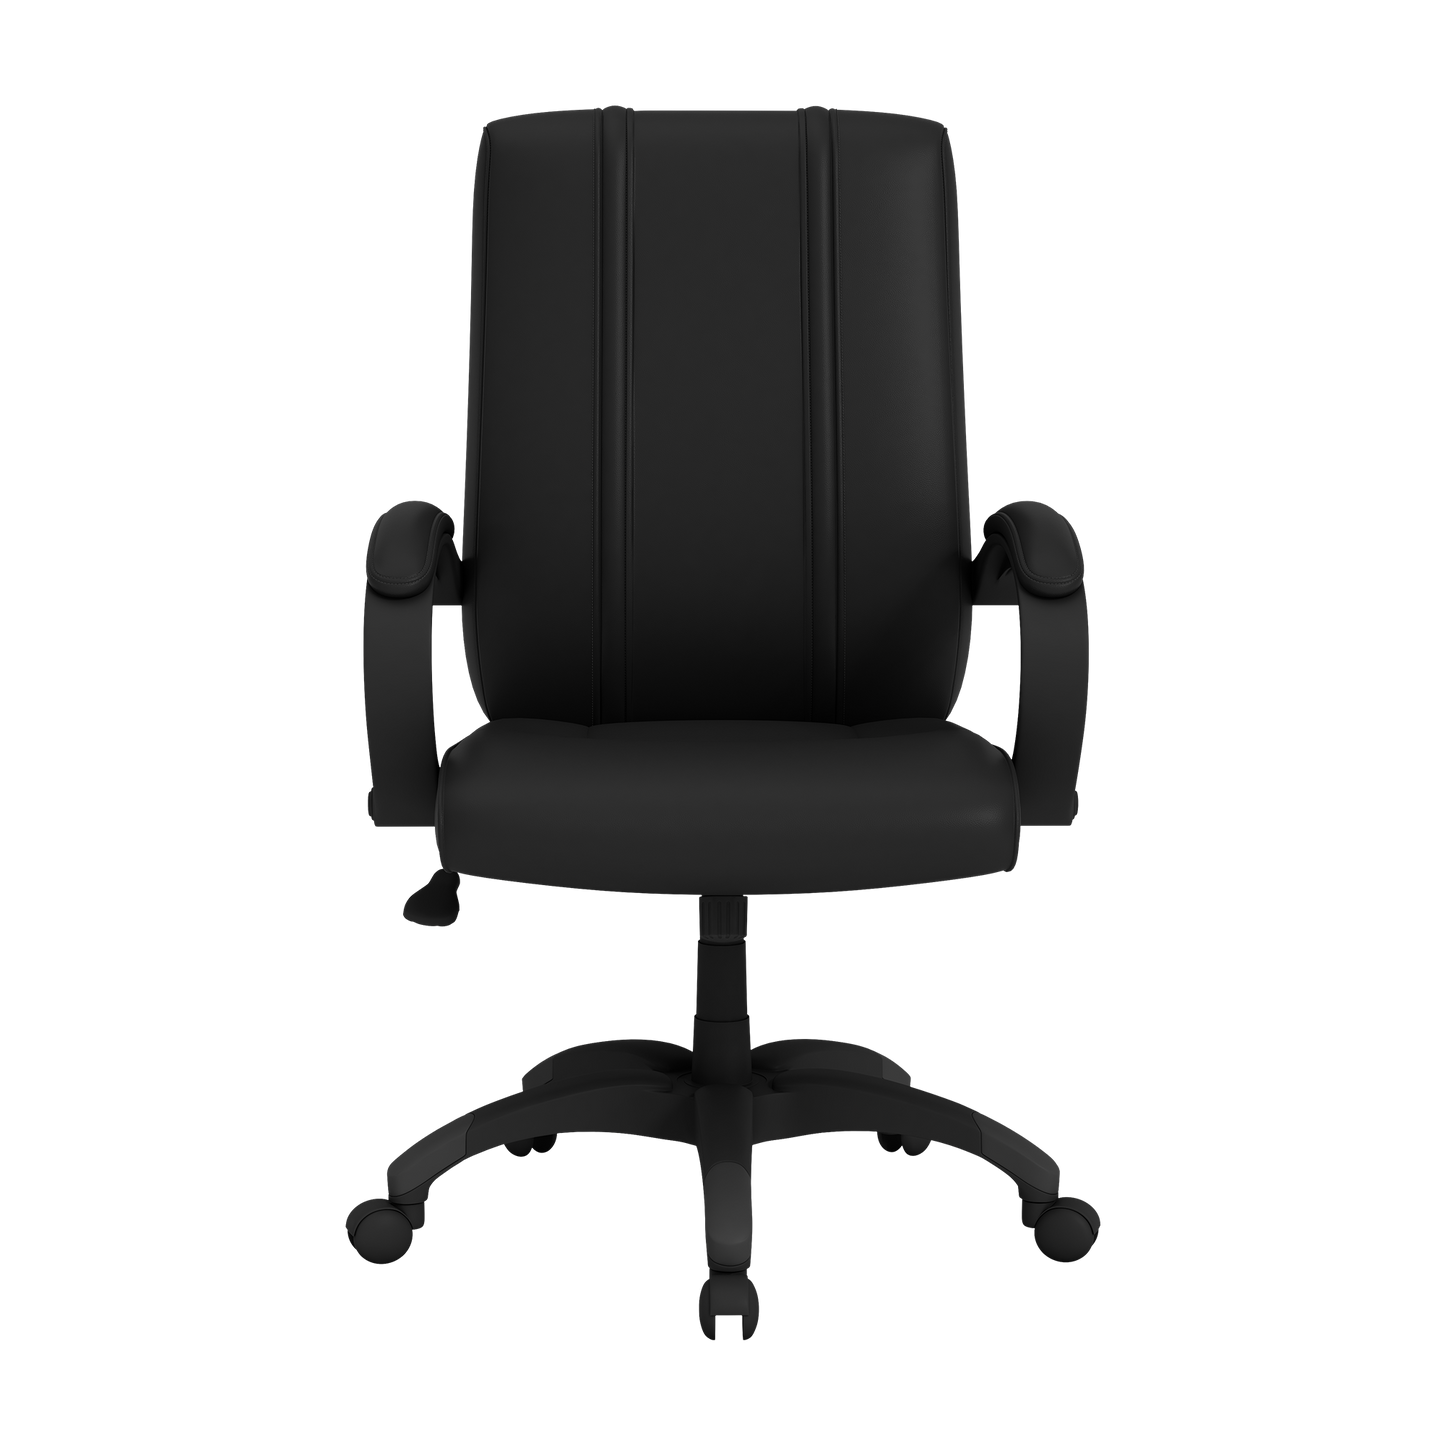 Office Chair 1000 with Arkansas Razorbacks Secondary Logo